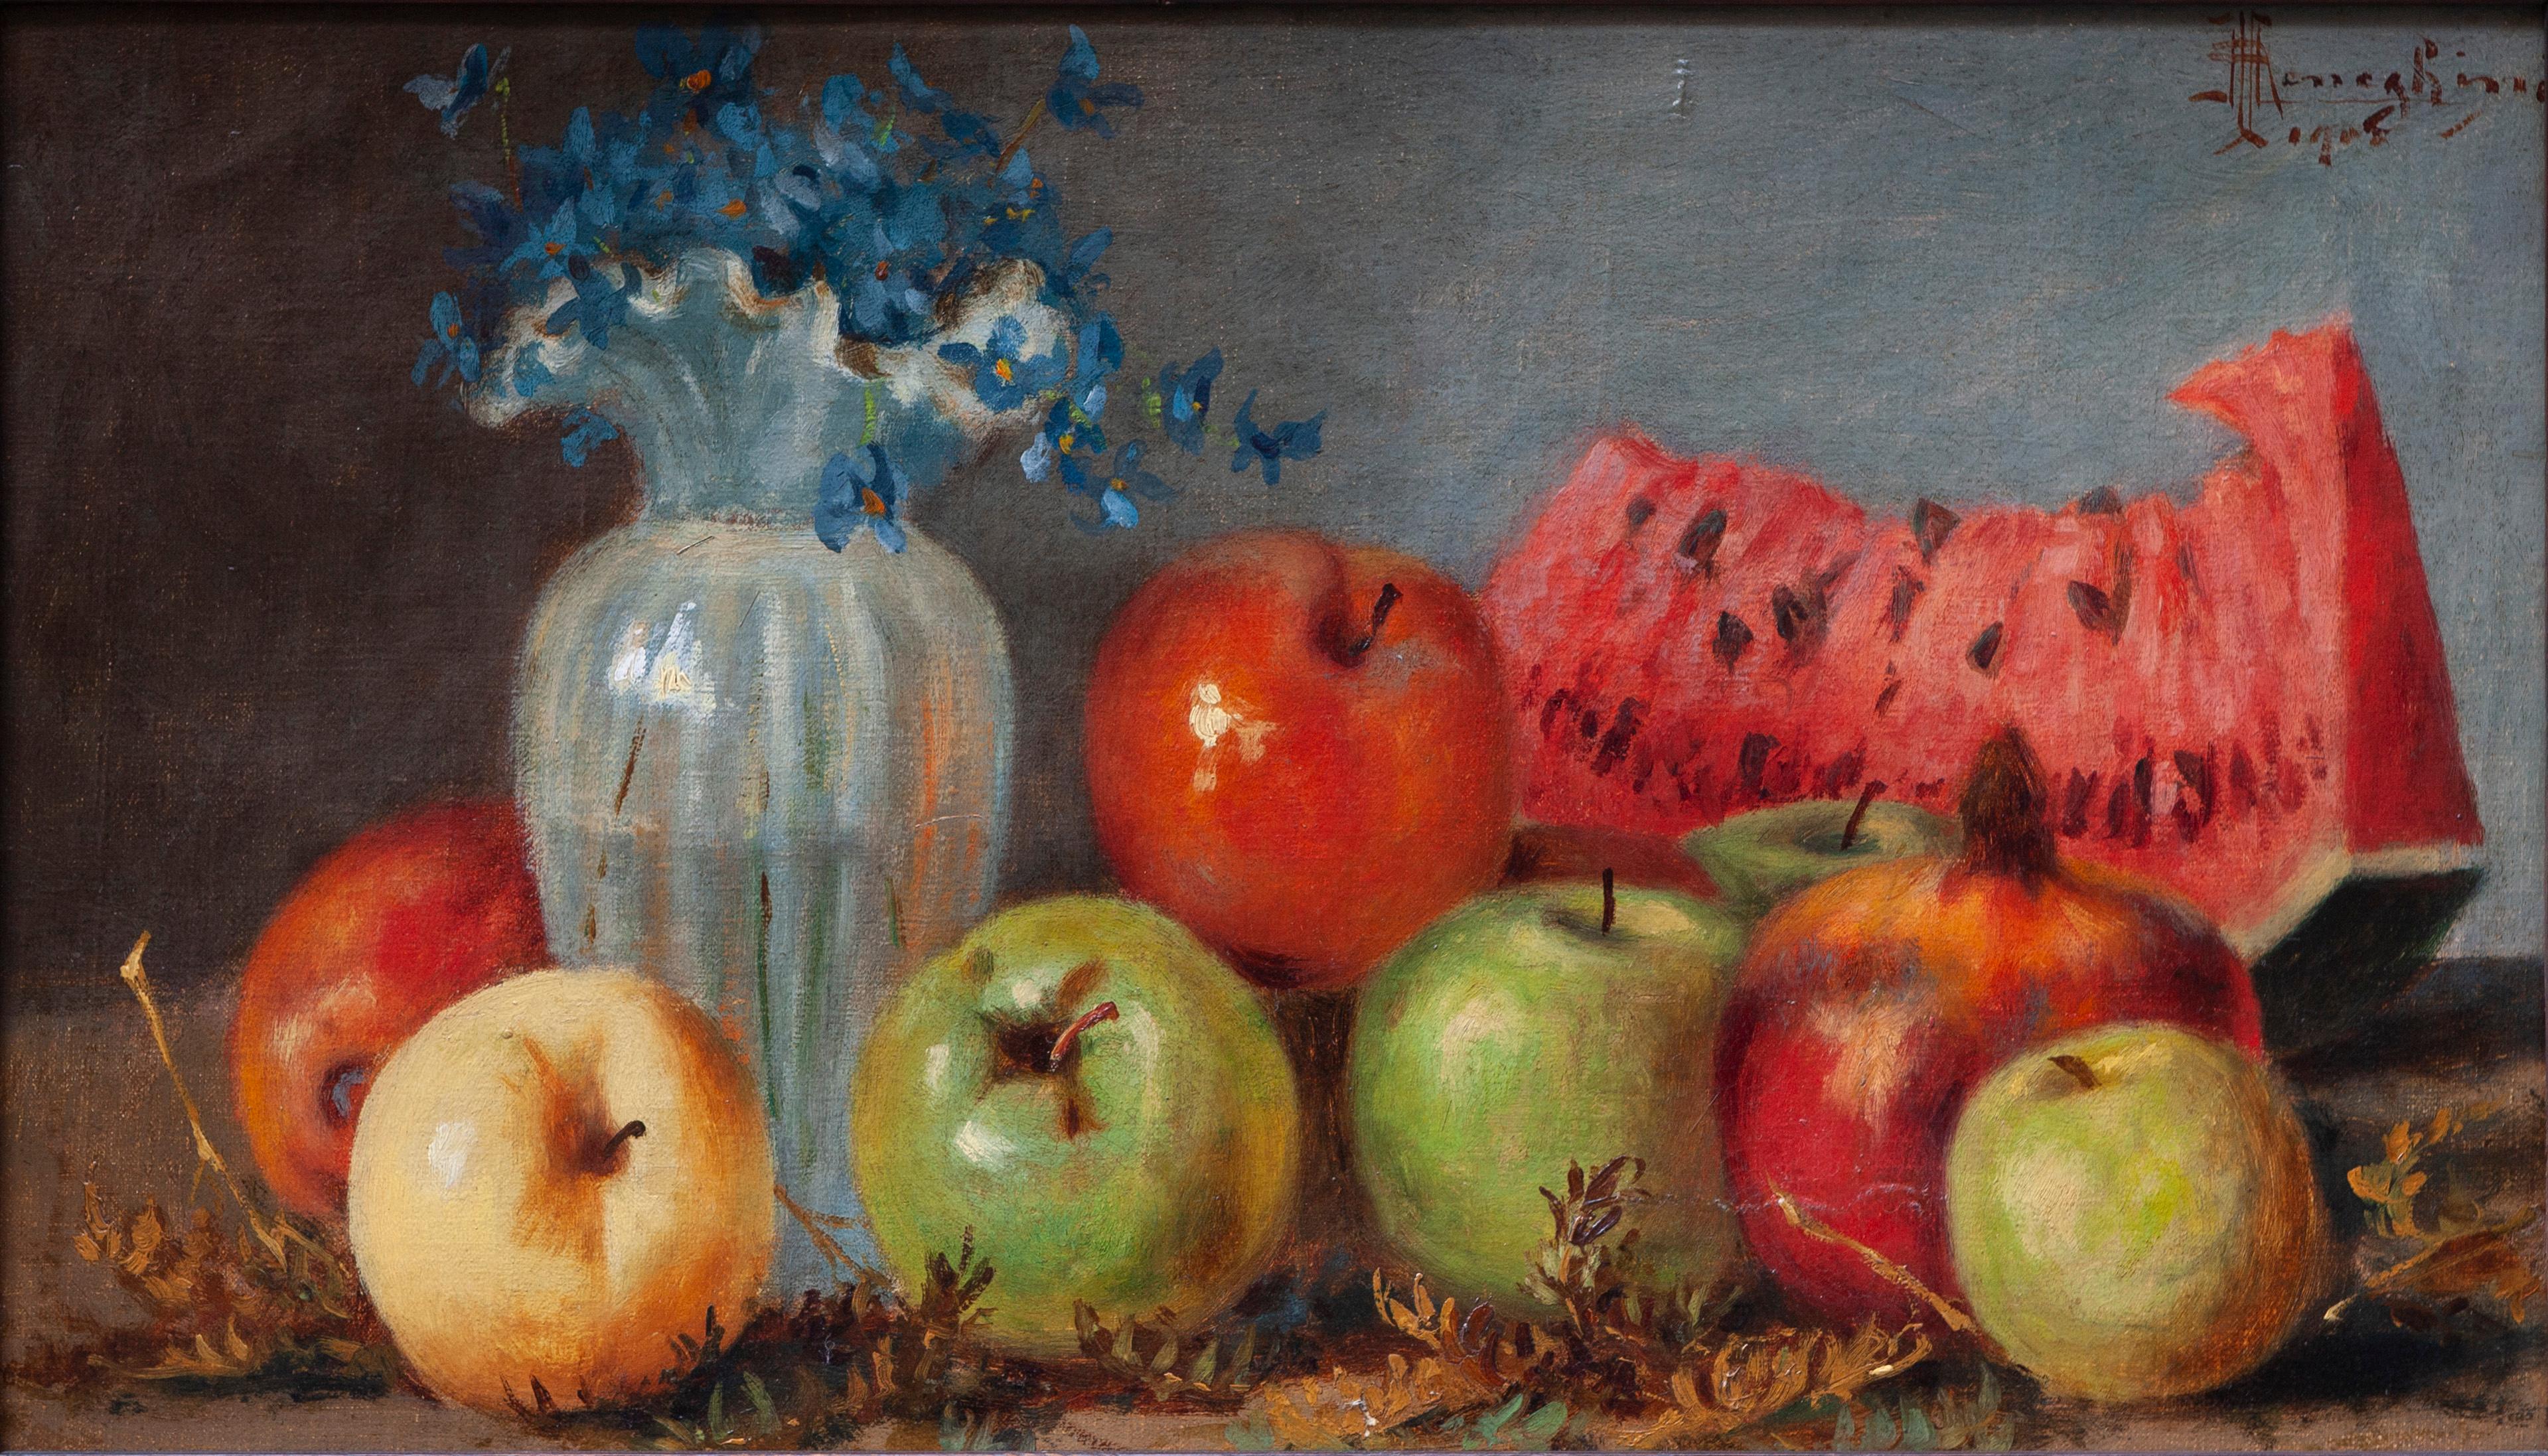 Stilleben mit Wassermelone, Äpfeln und Blumenvase – Painting von Ruggero Meneghini